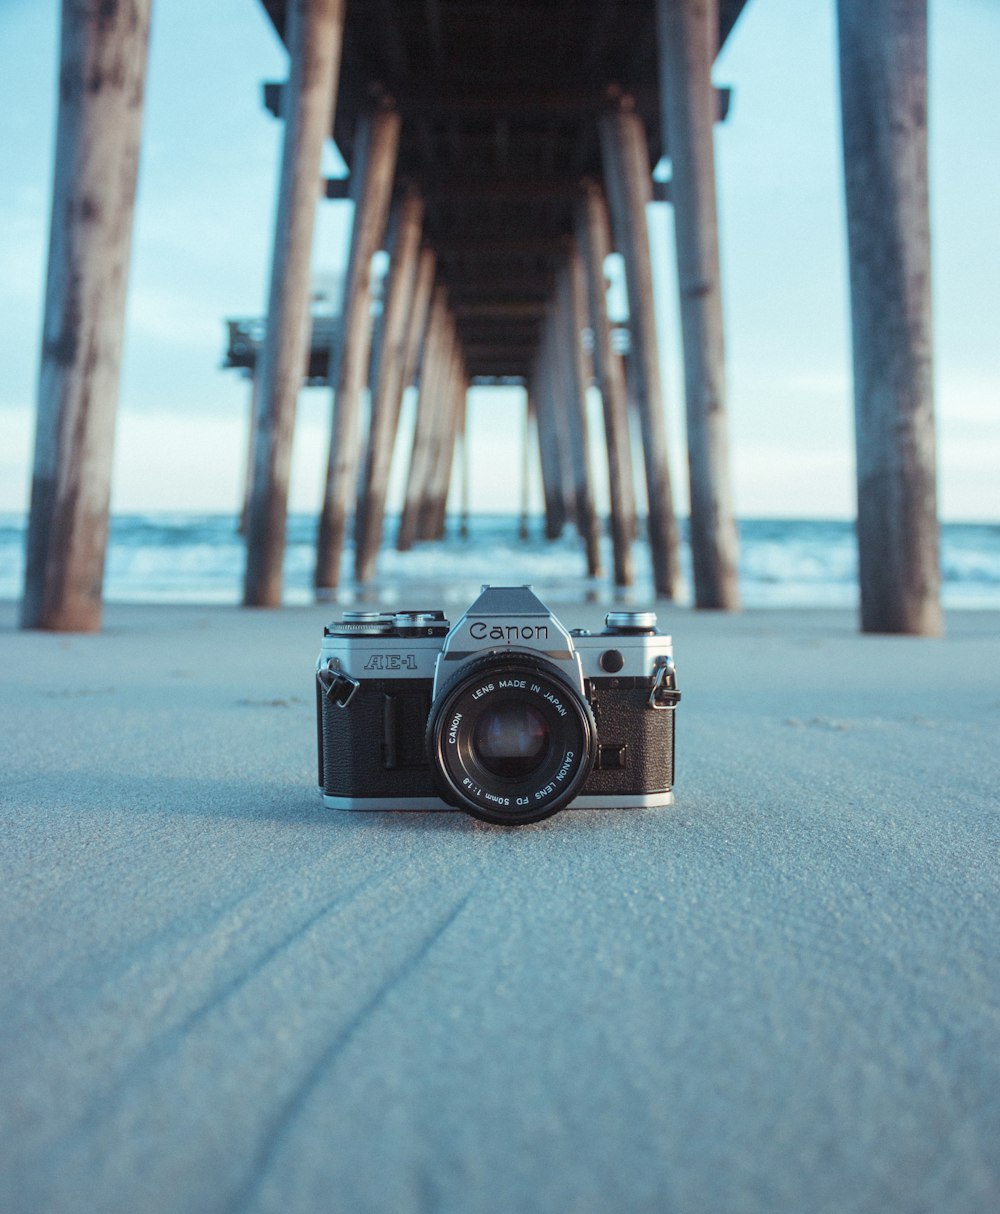 Foto canon ae-1 negra y gris sobre arena gris bajo un muelle marrón cerca del cuerpo agua durante el día – Imagen Canon gratis en Unsplash